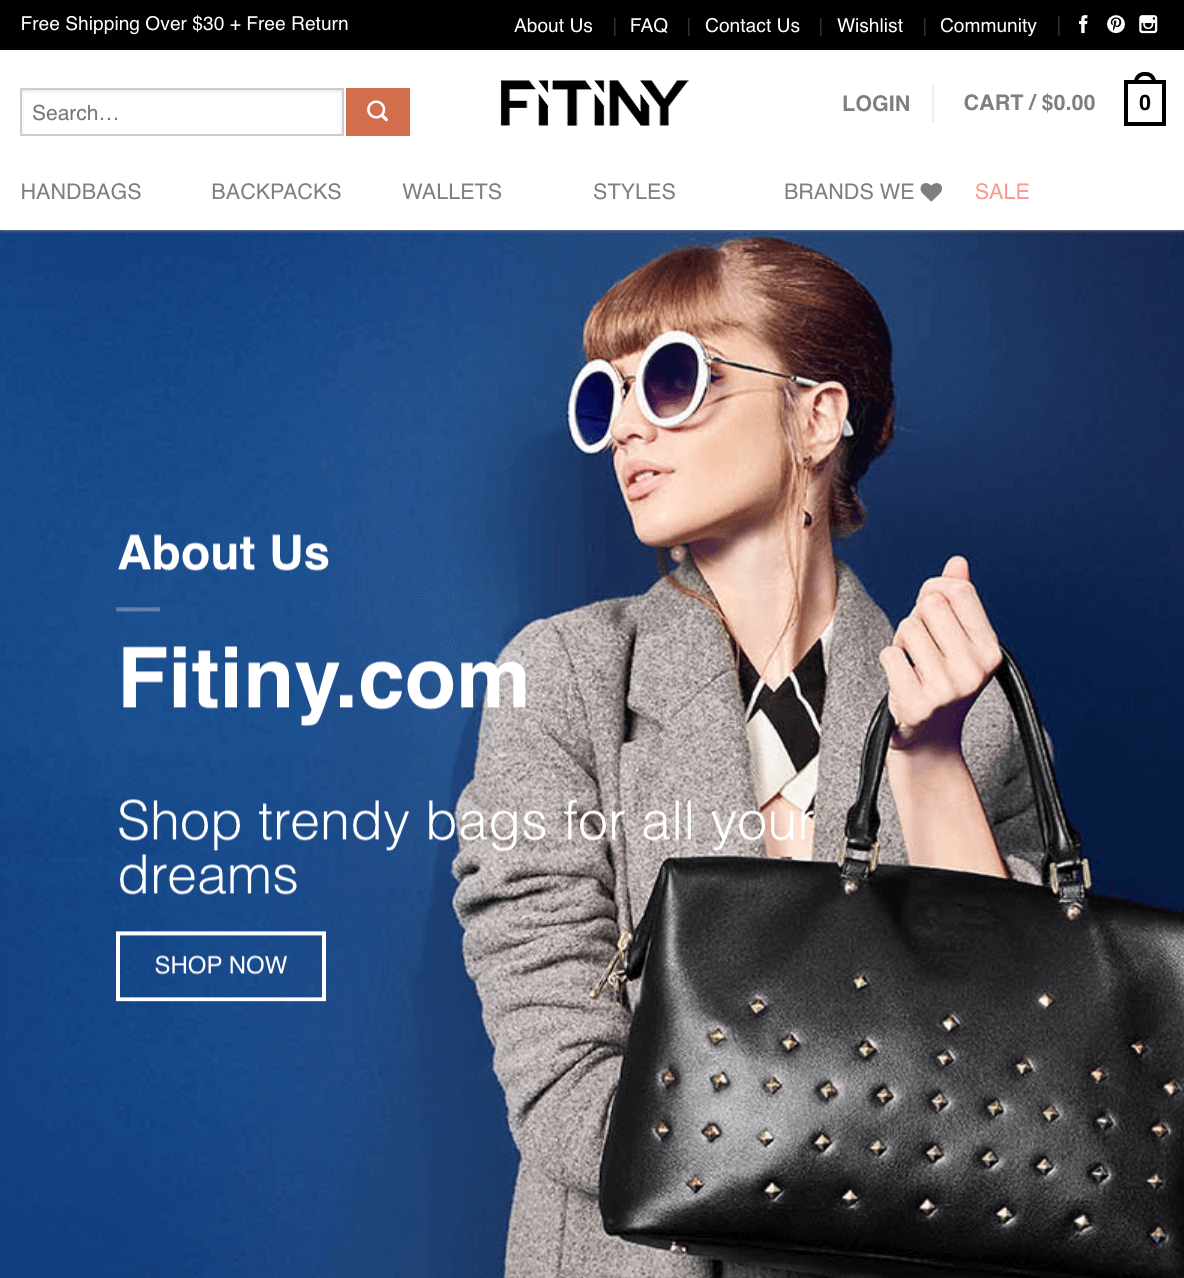 fitiny website